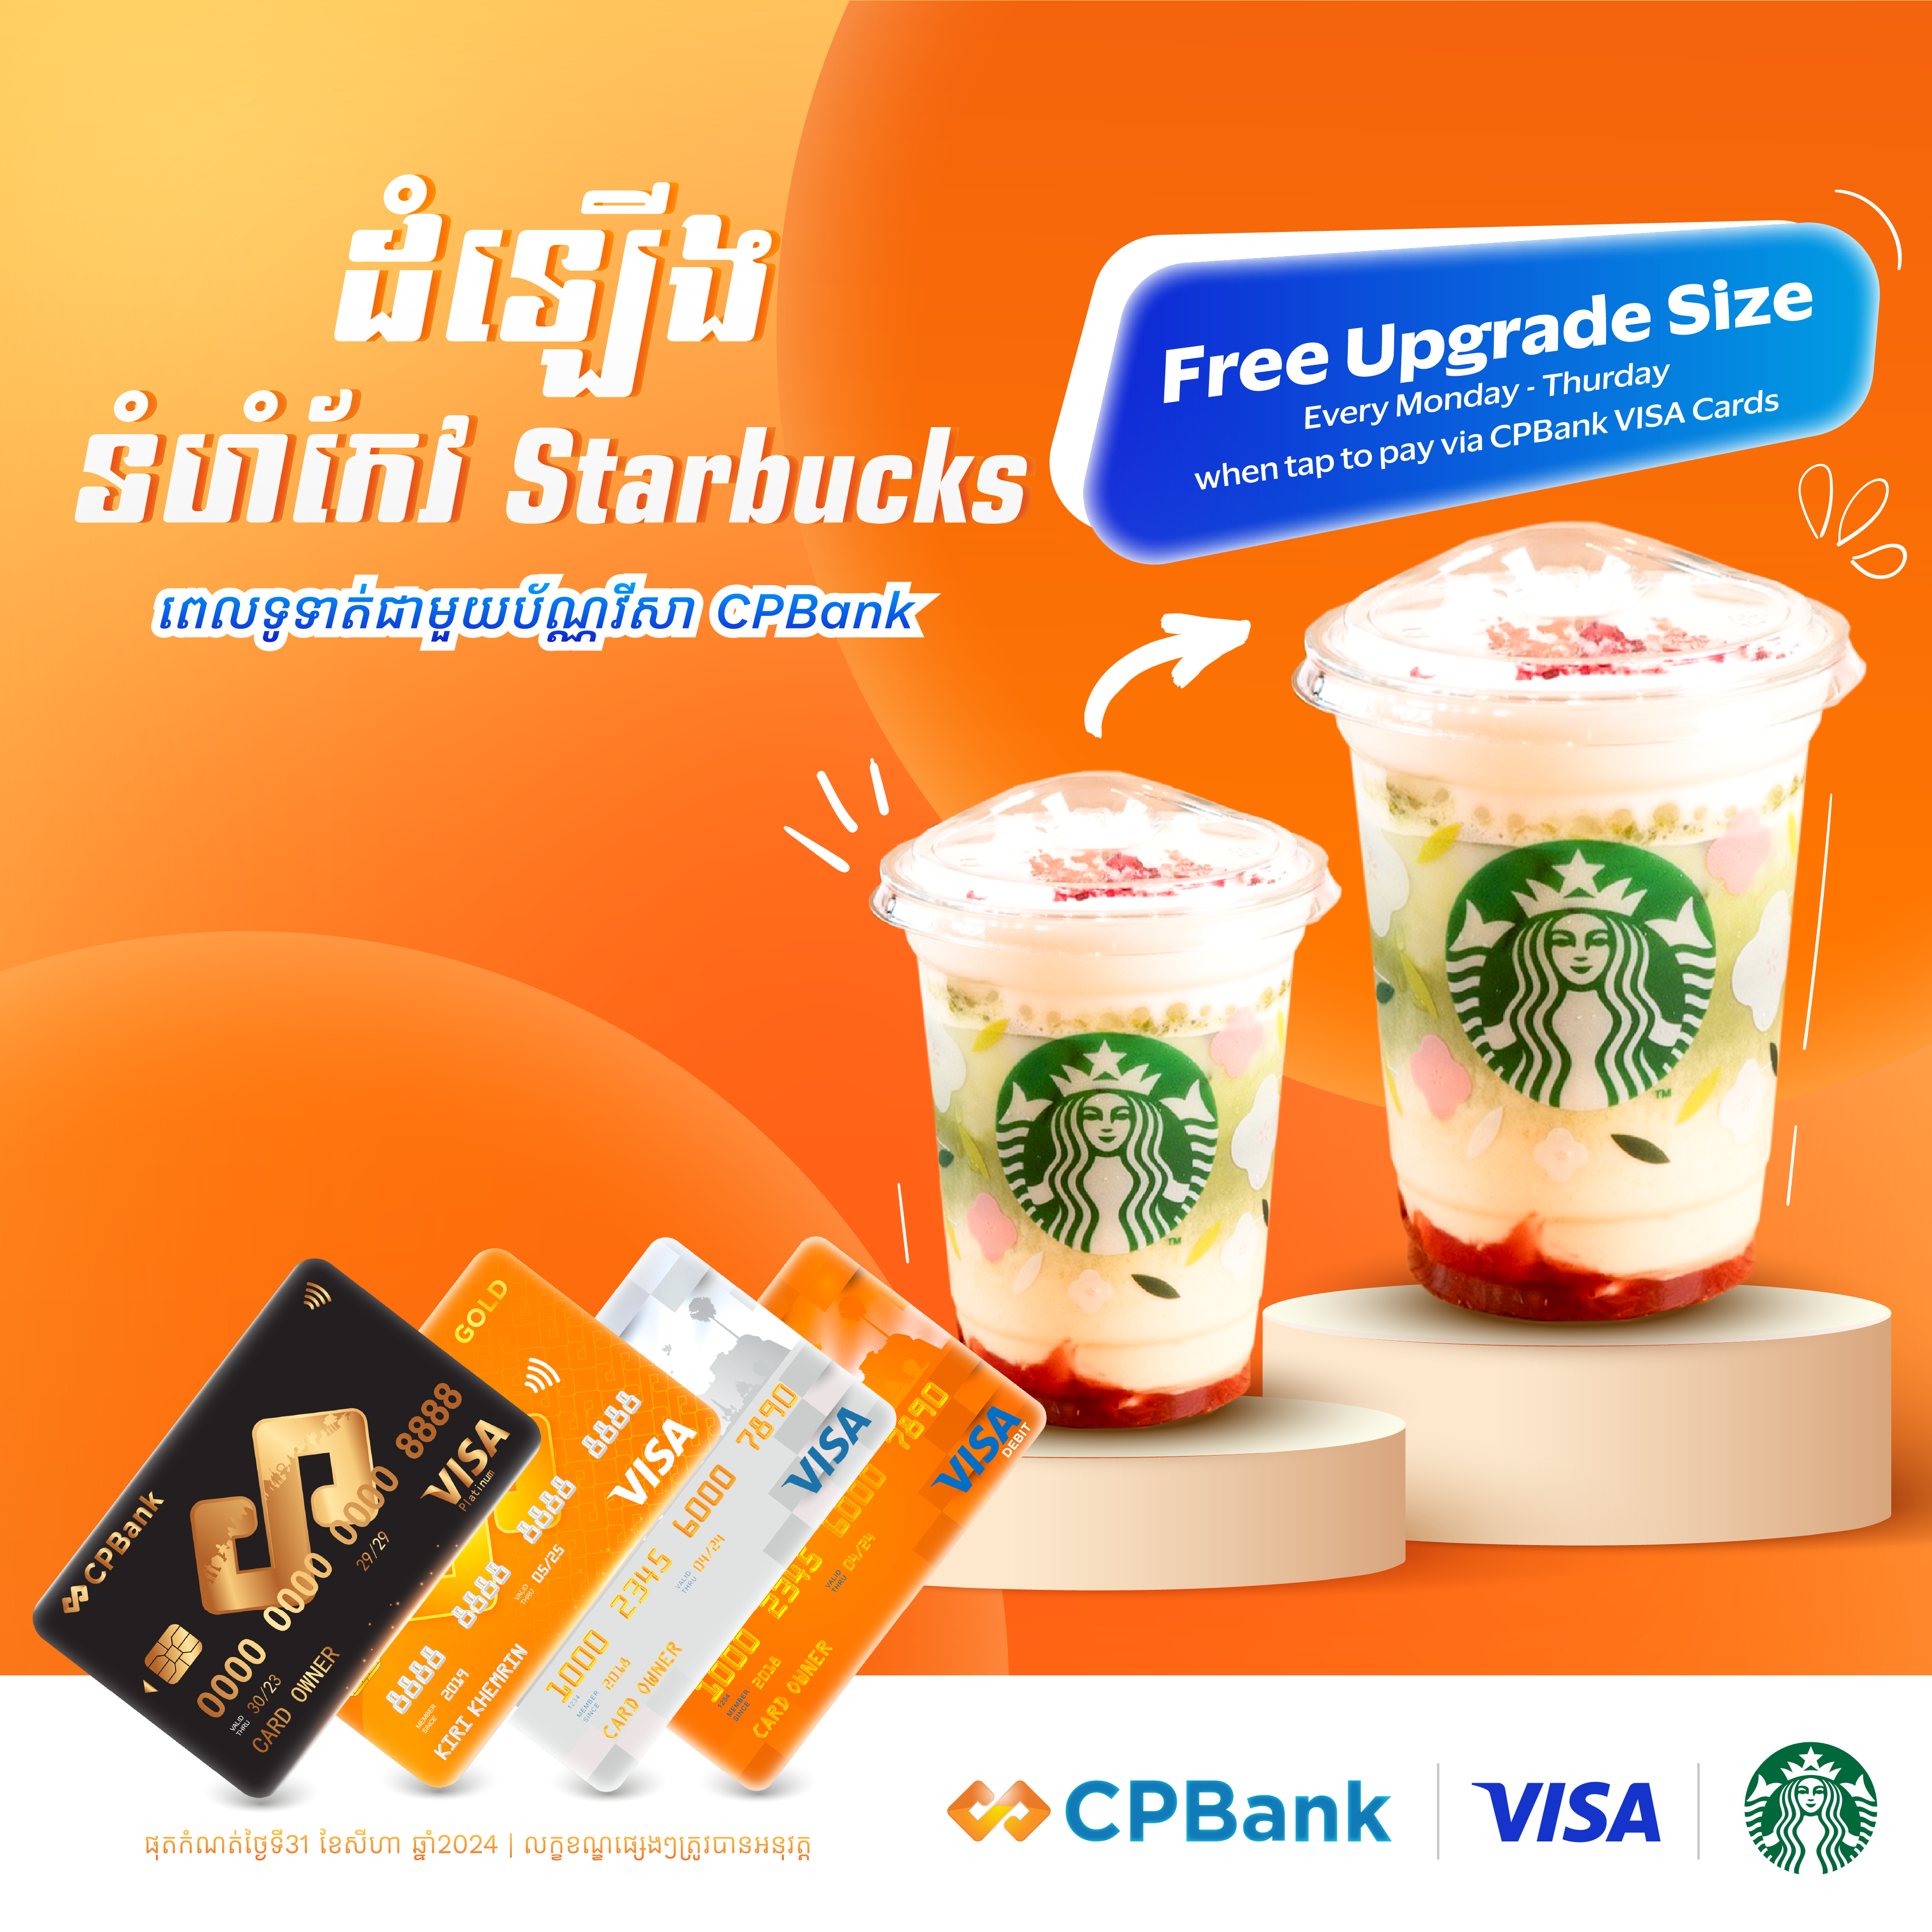 ដំឡើងទំហំកែវ Starbucks ដោយឥតគិតថ្លៃ ជាមួយប័ណ្ណវីសា CPBank